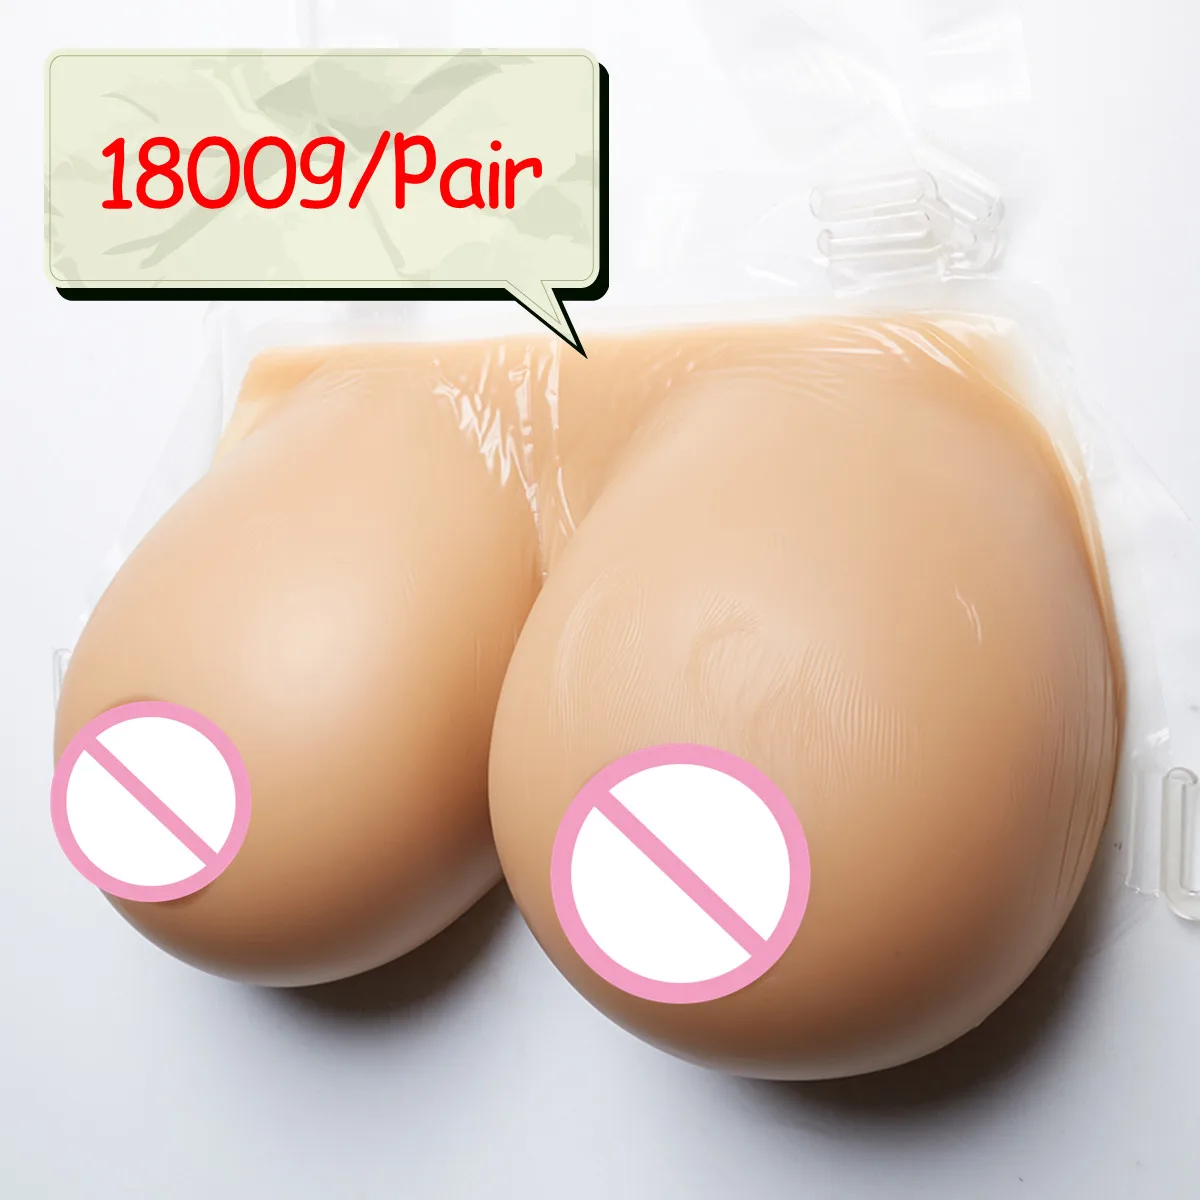 Rrealistic Bionic силиконовые формы груди Трансвестит поддельные сиськи Расщепление для Для мужчин секс кукла 1800 г E загар силиконовые груди